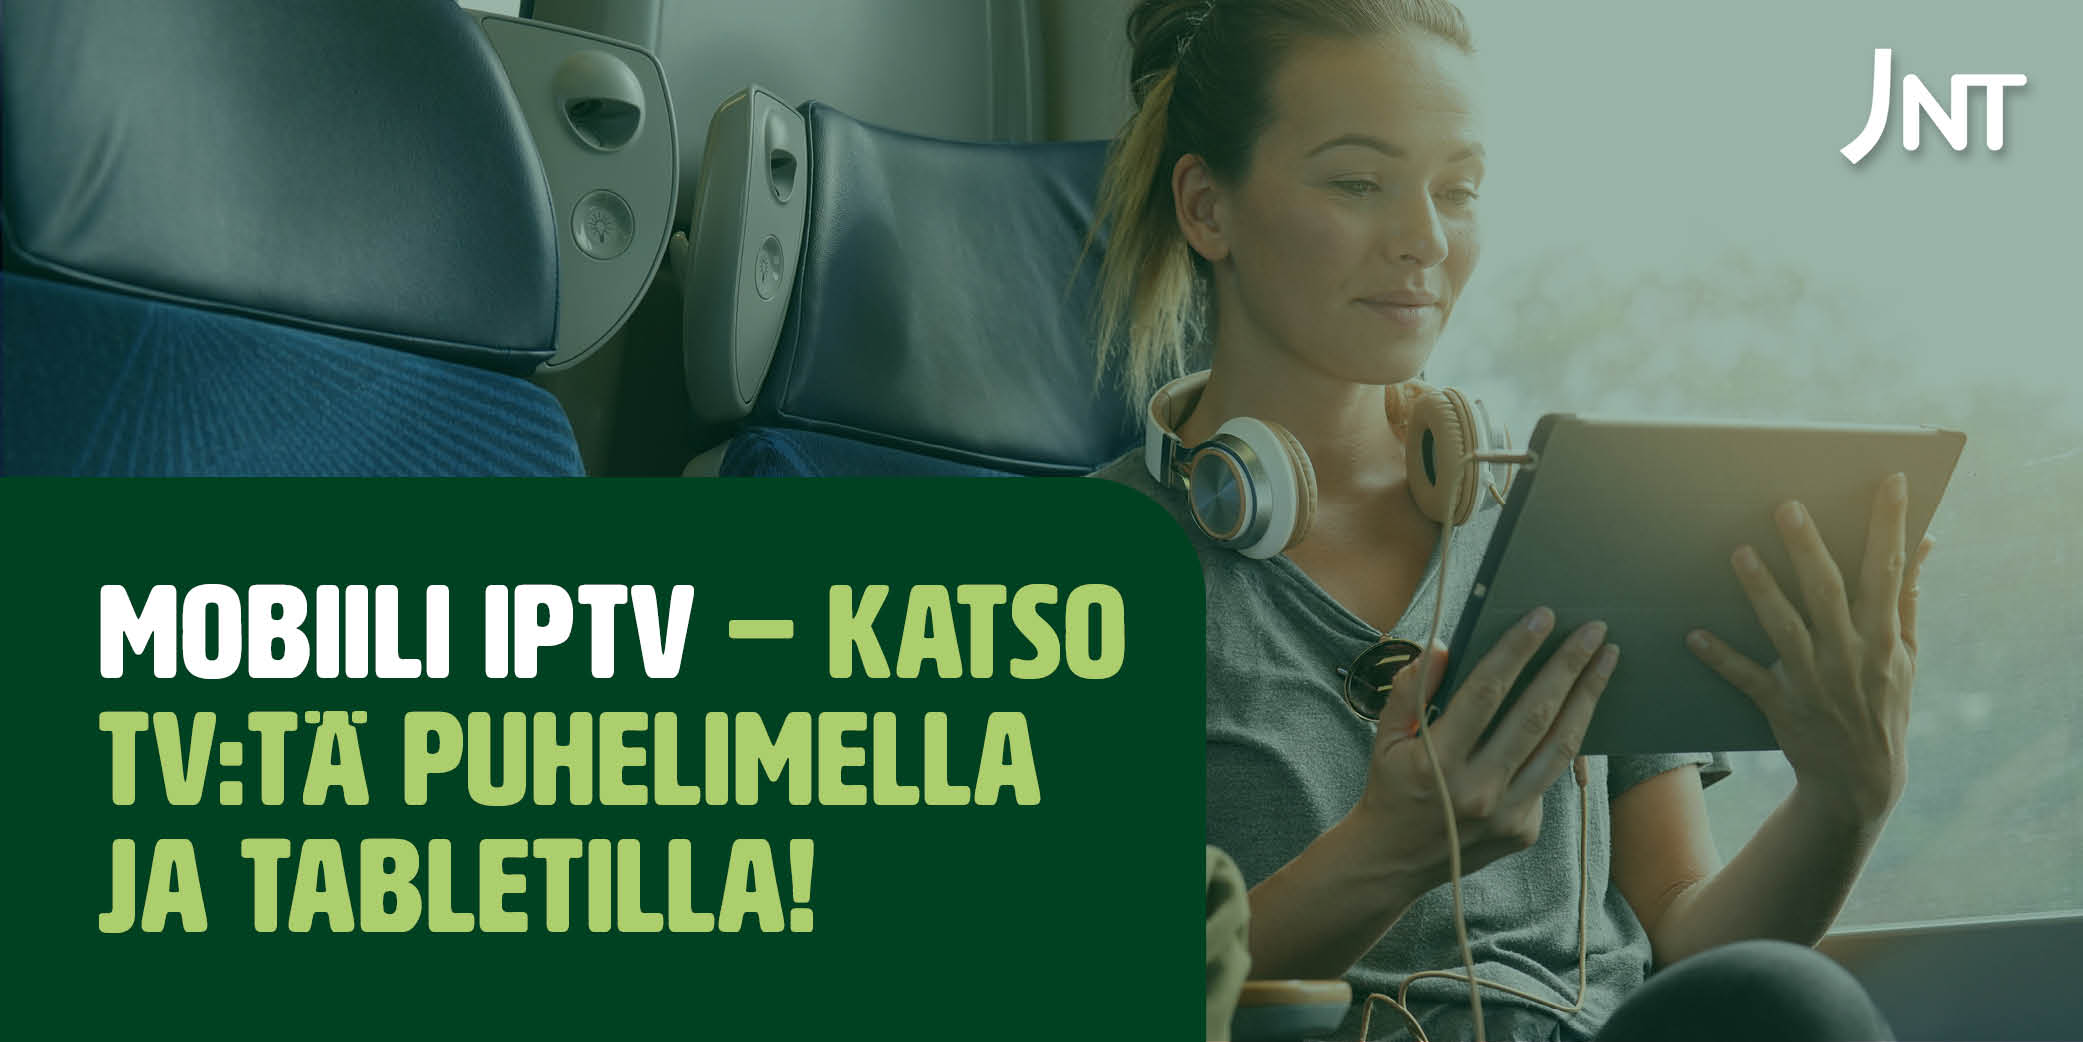 Nyt voit katsella ruotsin kanavia Mobiili IPTV:n kautta